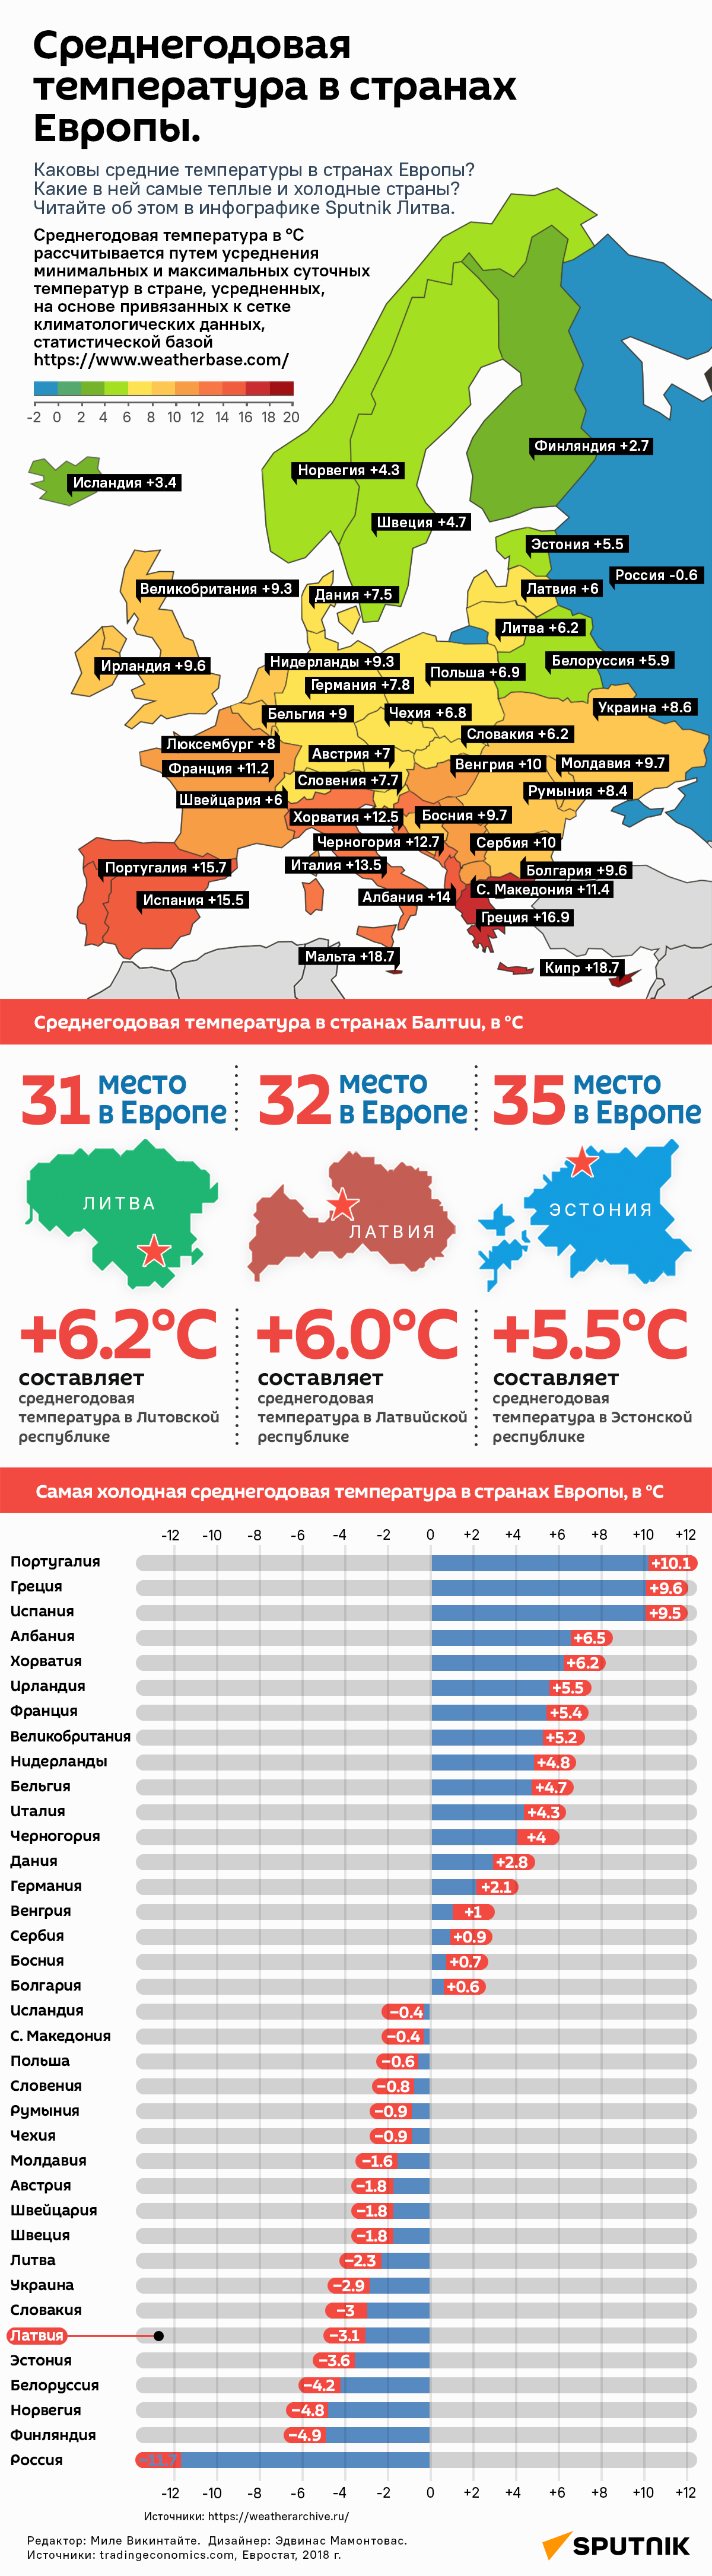 Среднегодовая температура в странах Европы - Sputnik Латвия